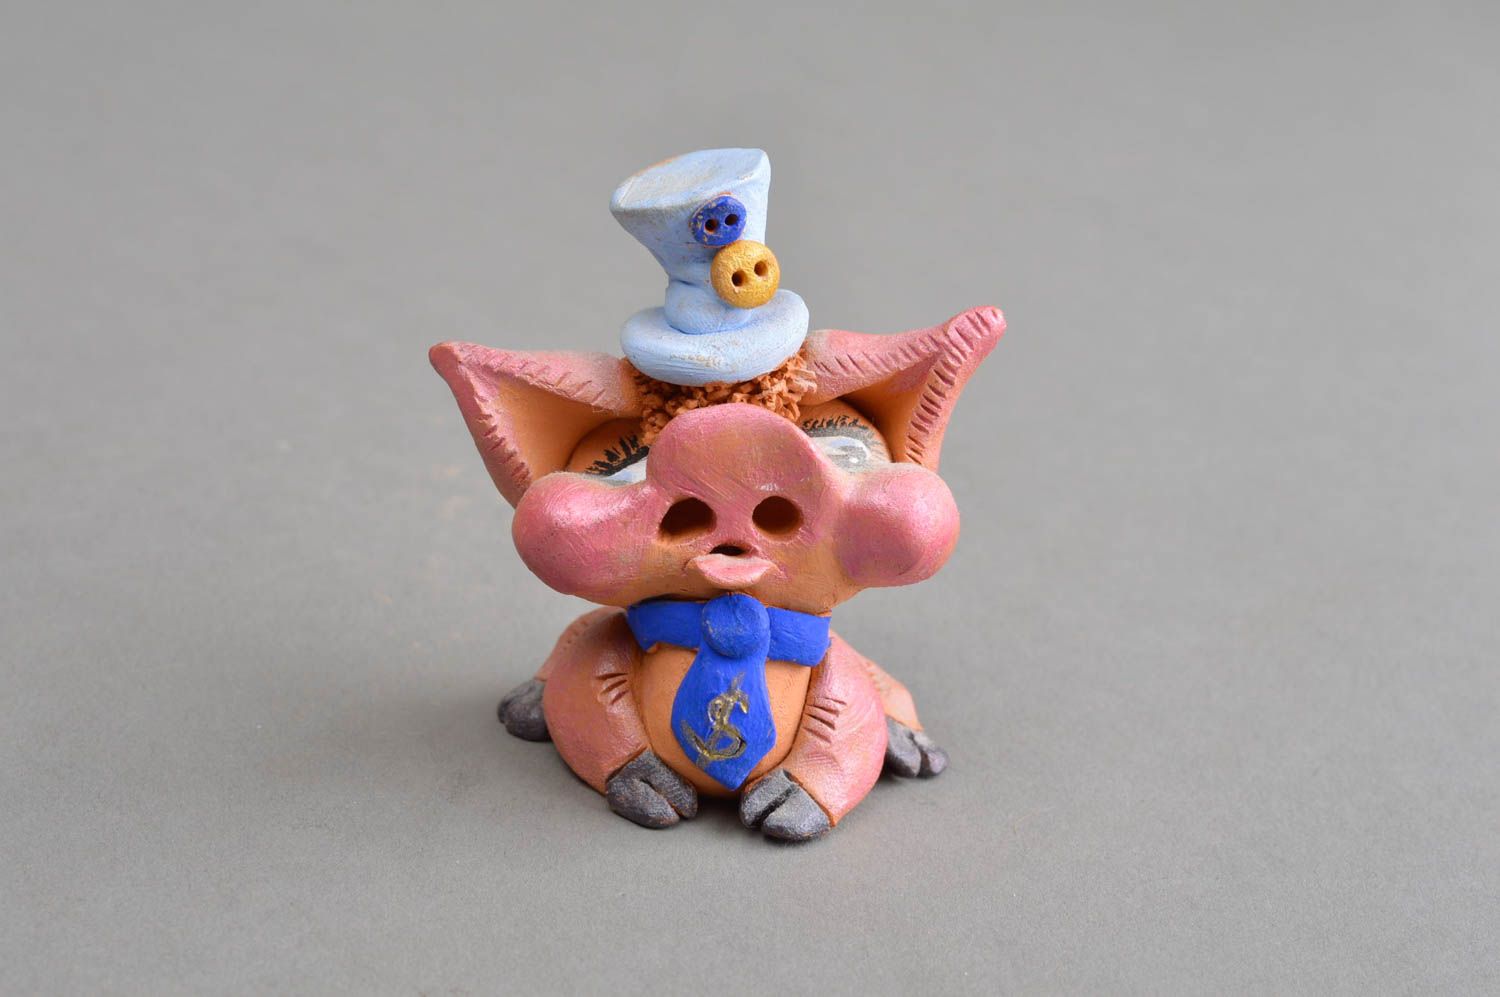 Ceramic statuette handmade pig figurine decorative clay for home decor photo 2